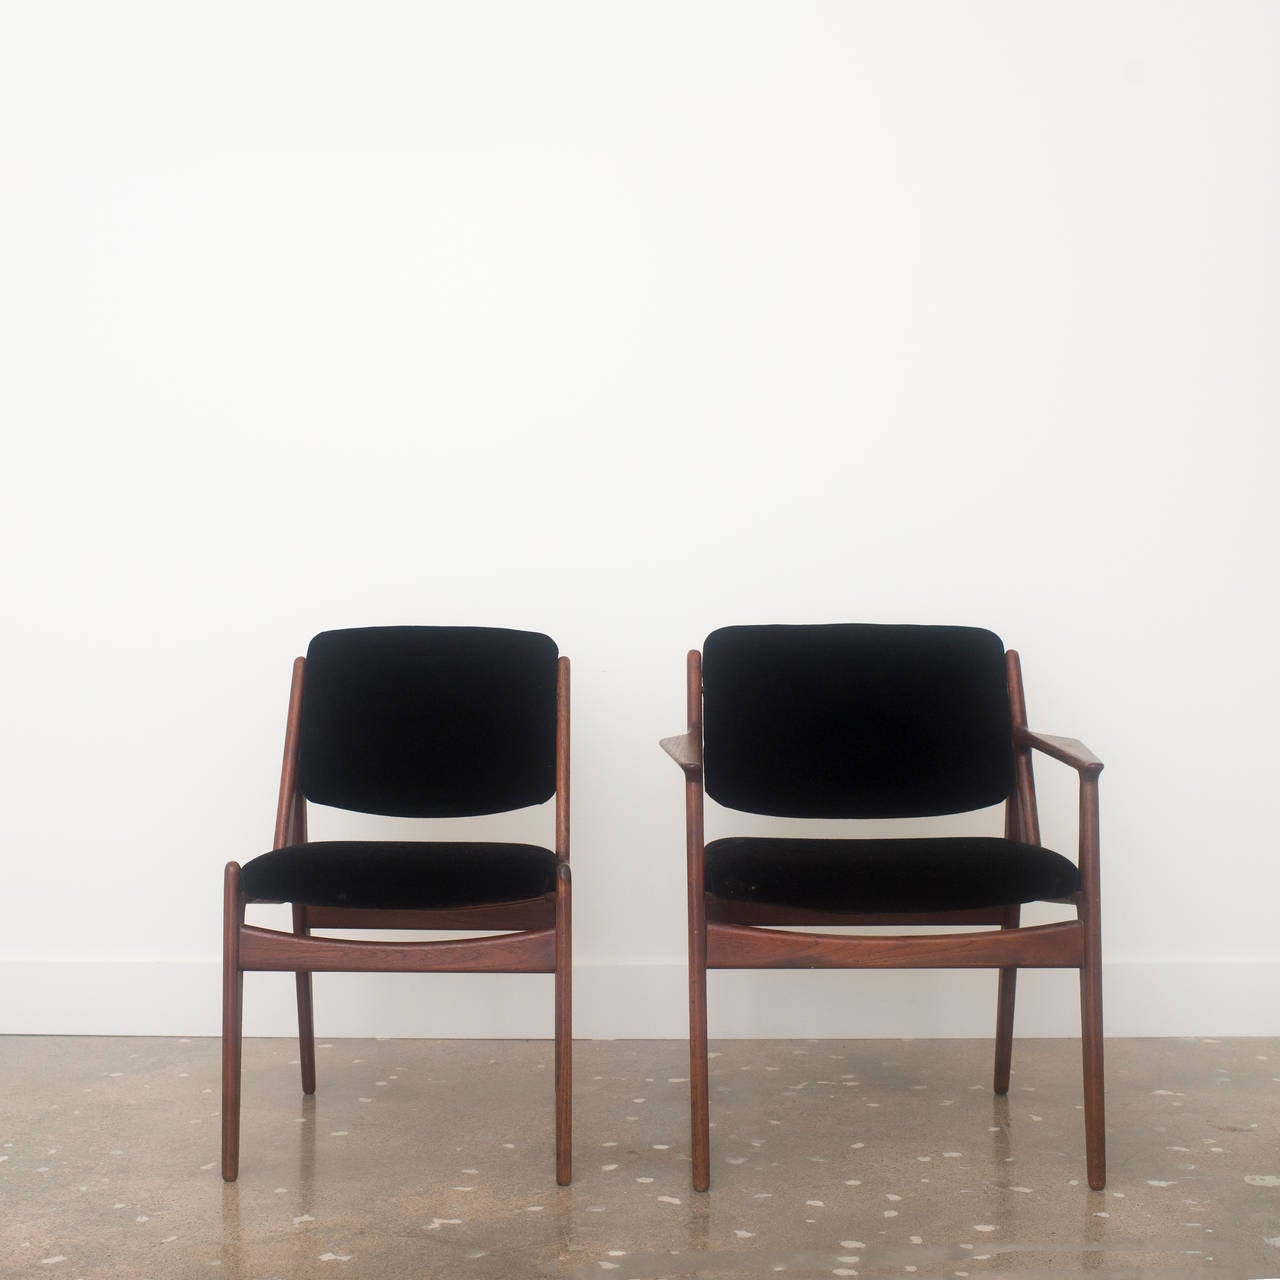 Danish Arne Vodder for Vamo Dining Chairs Upholstered in Black Mohair